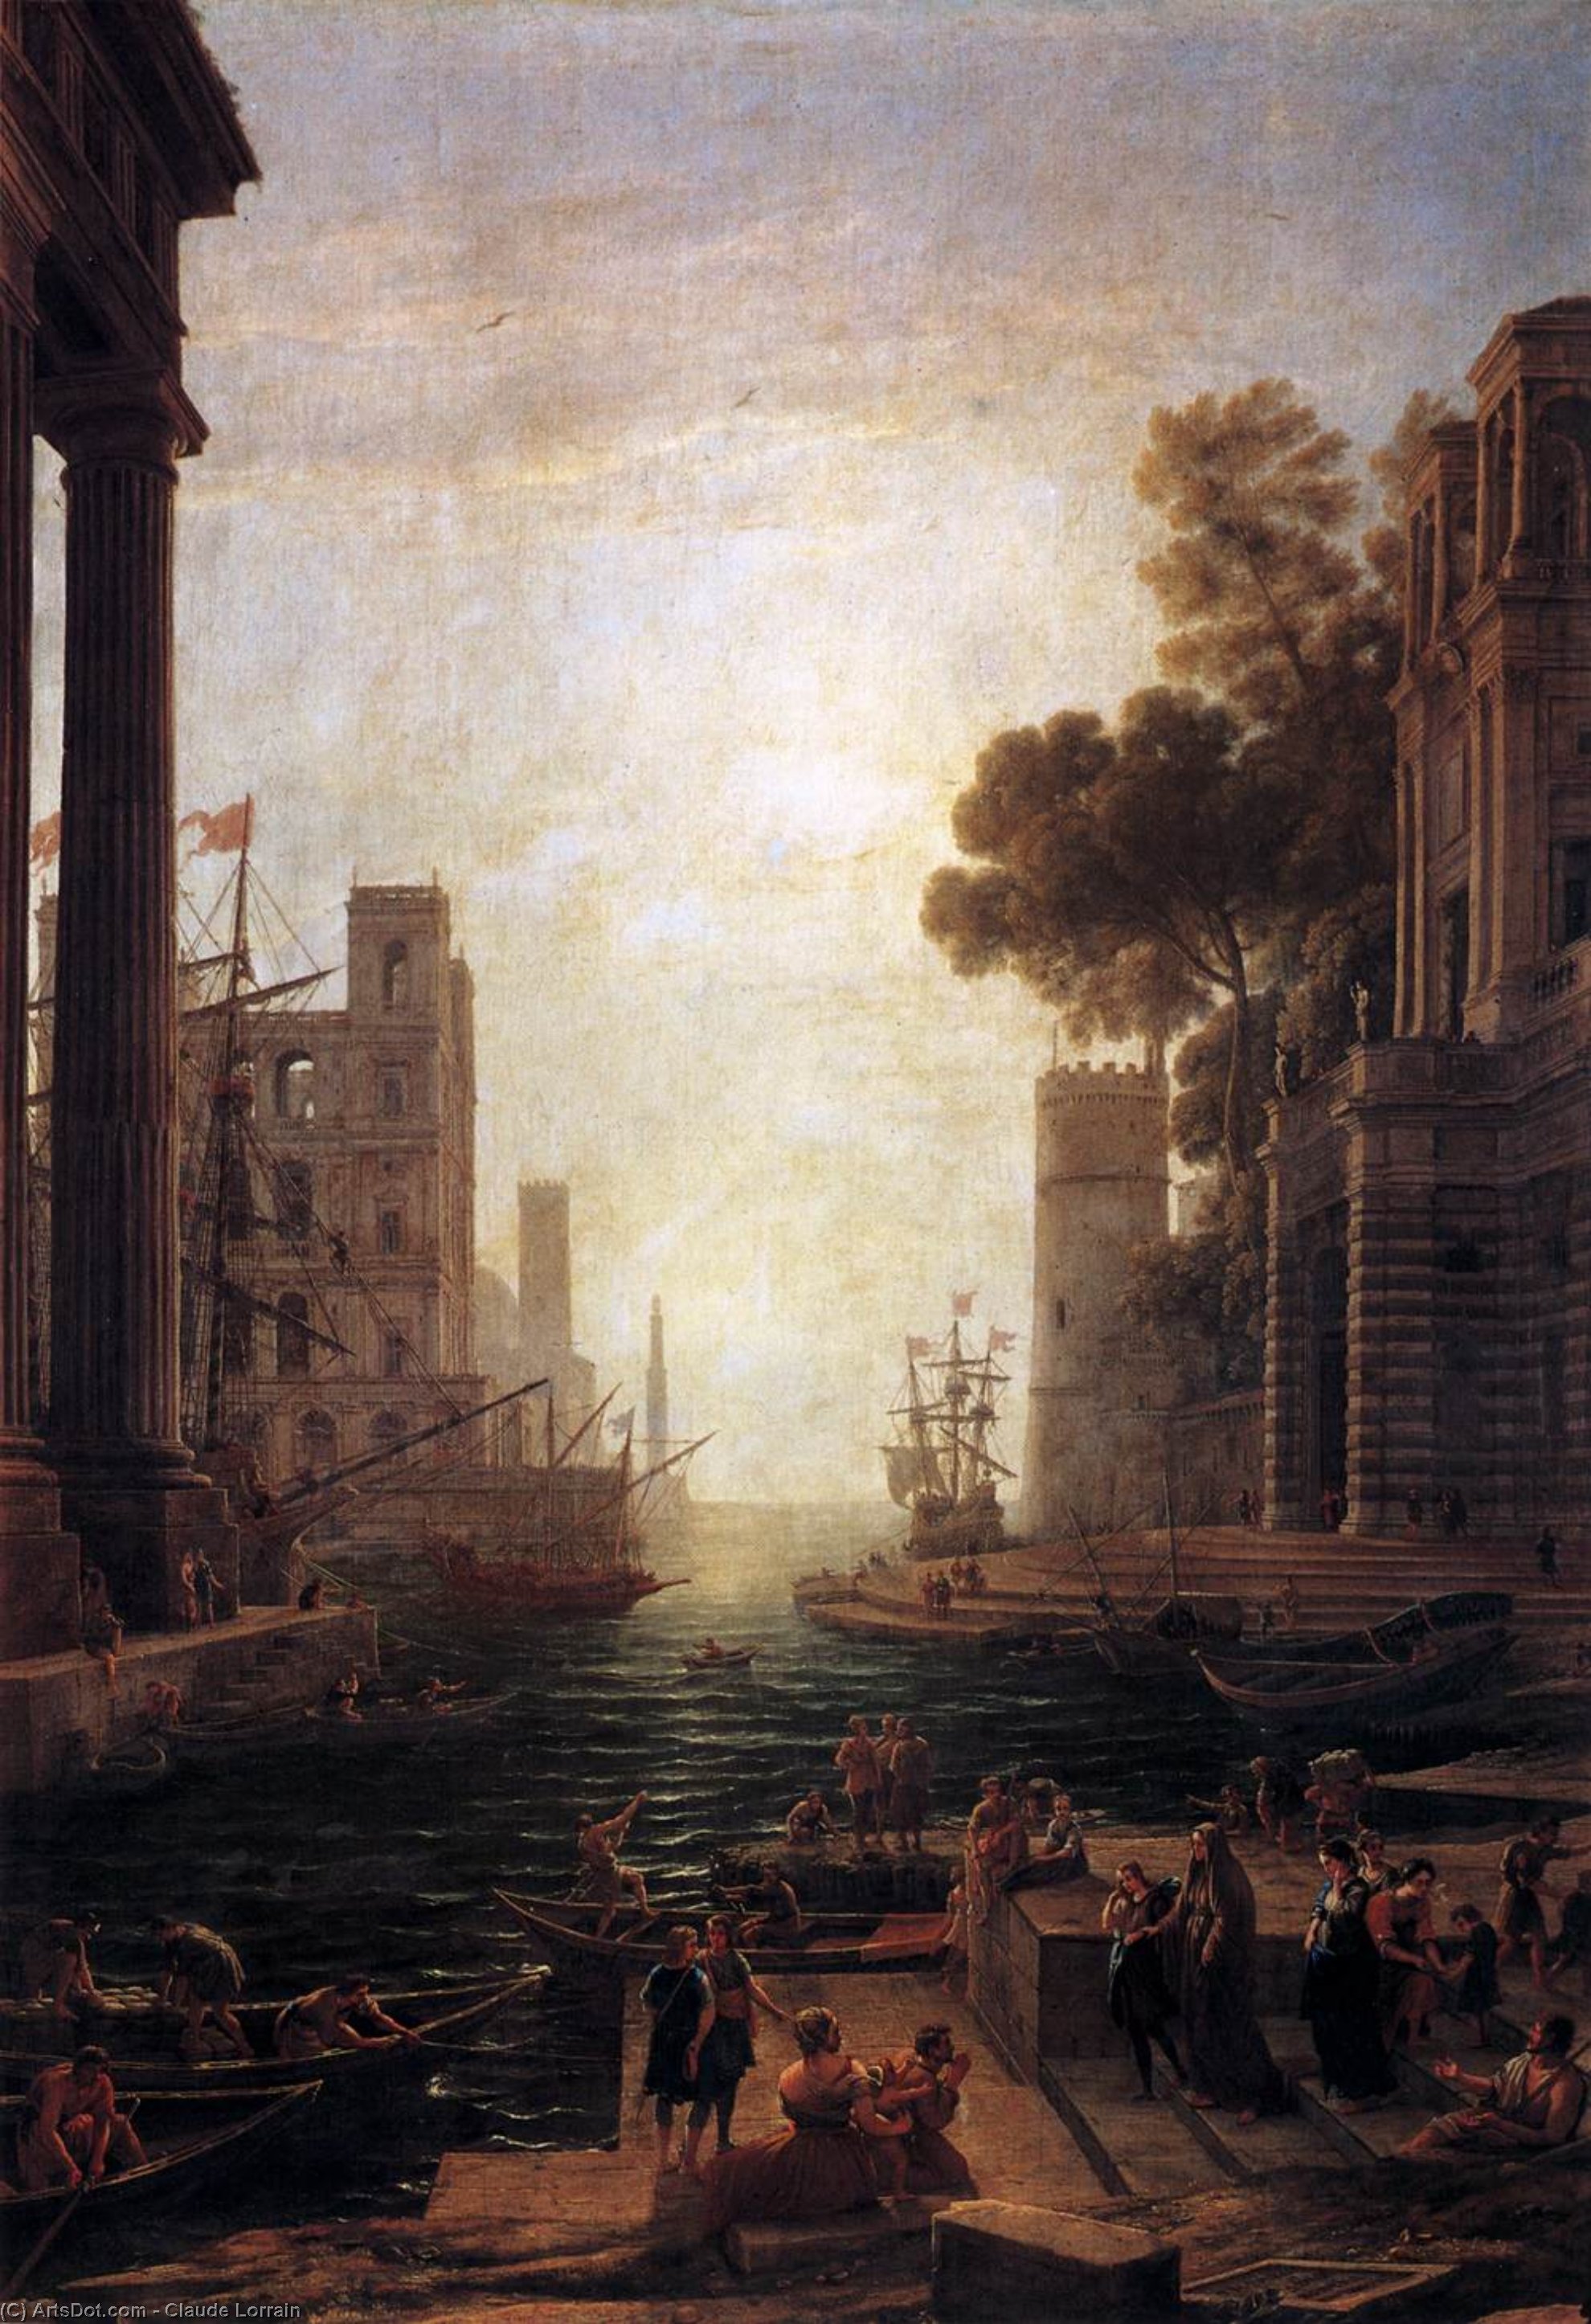 Buy Museum Art Reproductions Embarkation of St Paula Romana at Ostia, 1637 by Claude Lorrain (Claude Gellée) (1600-1682) | ArtsDot.com